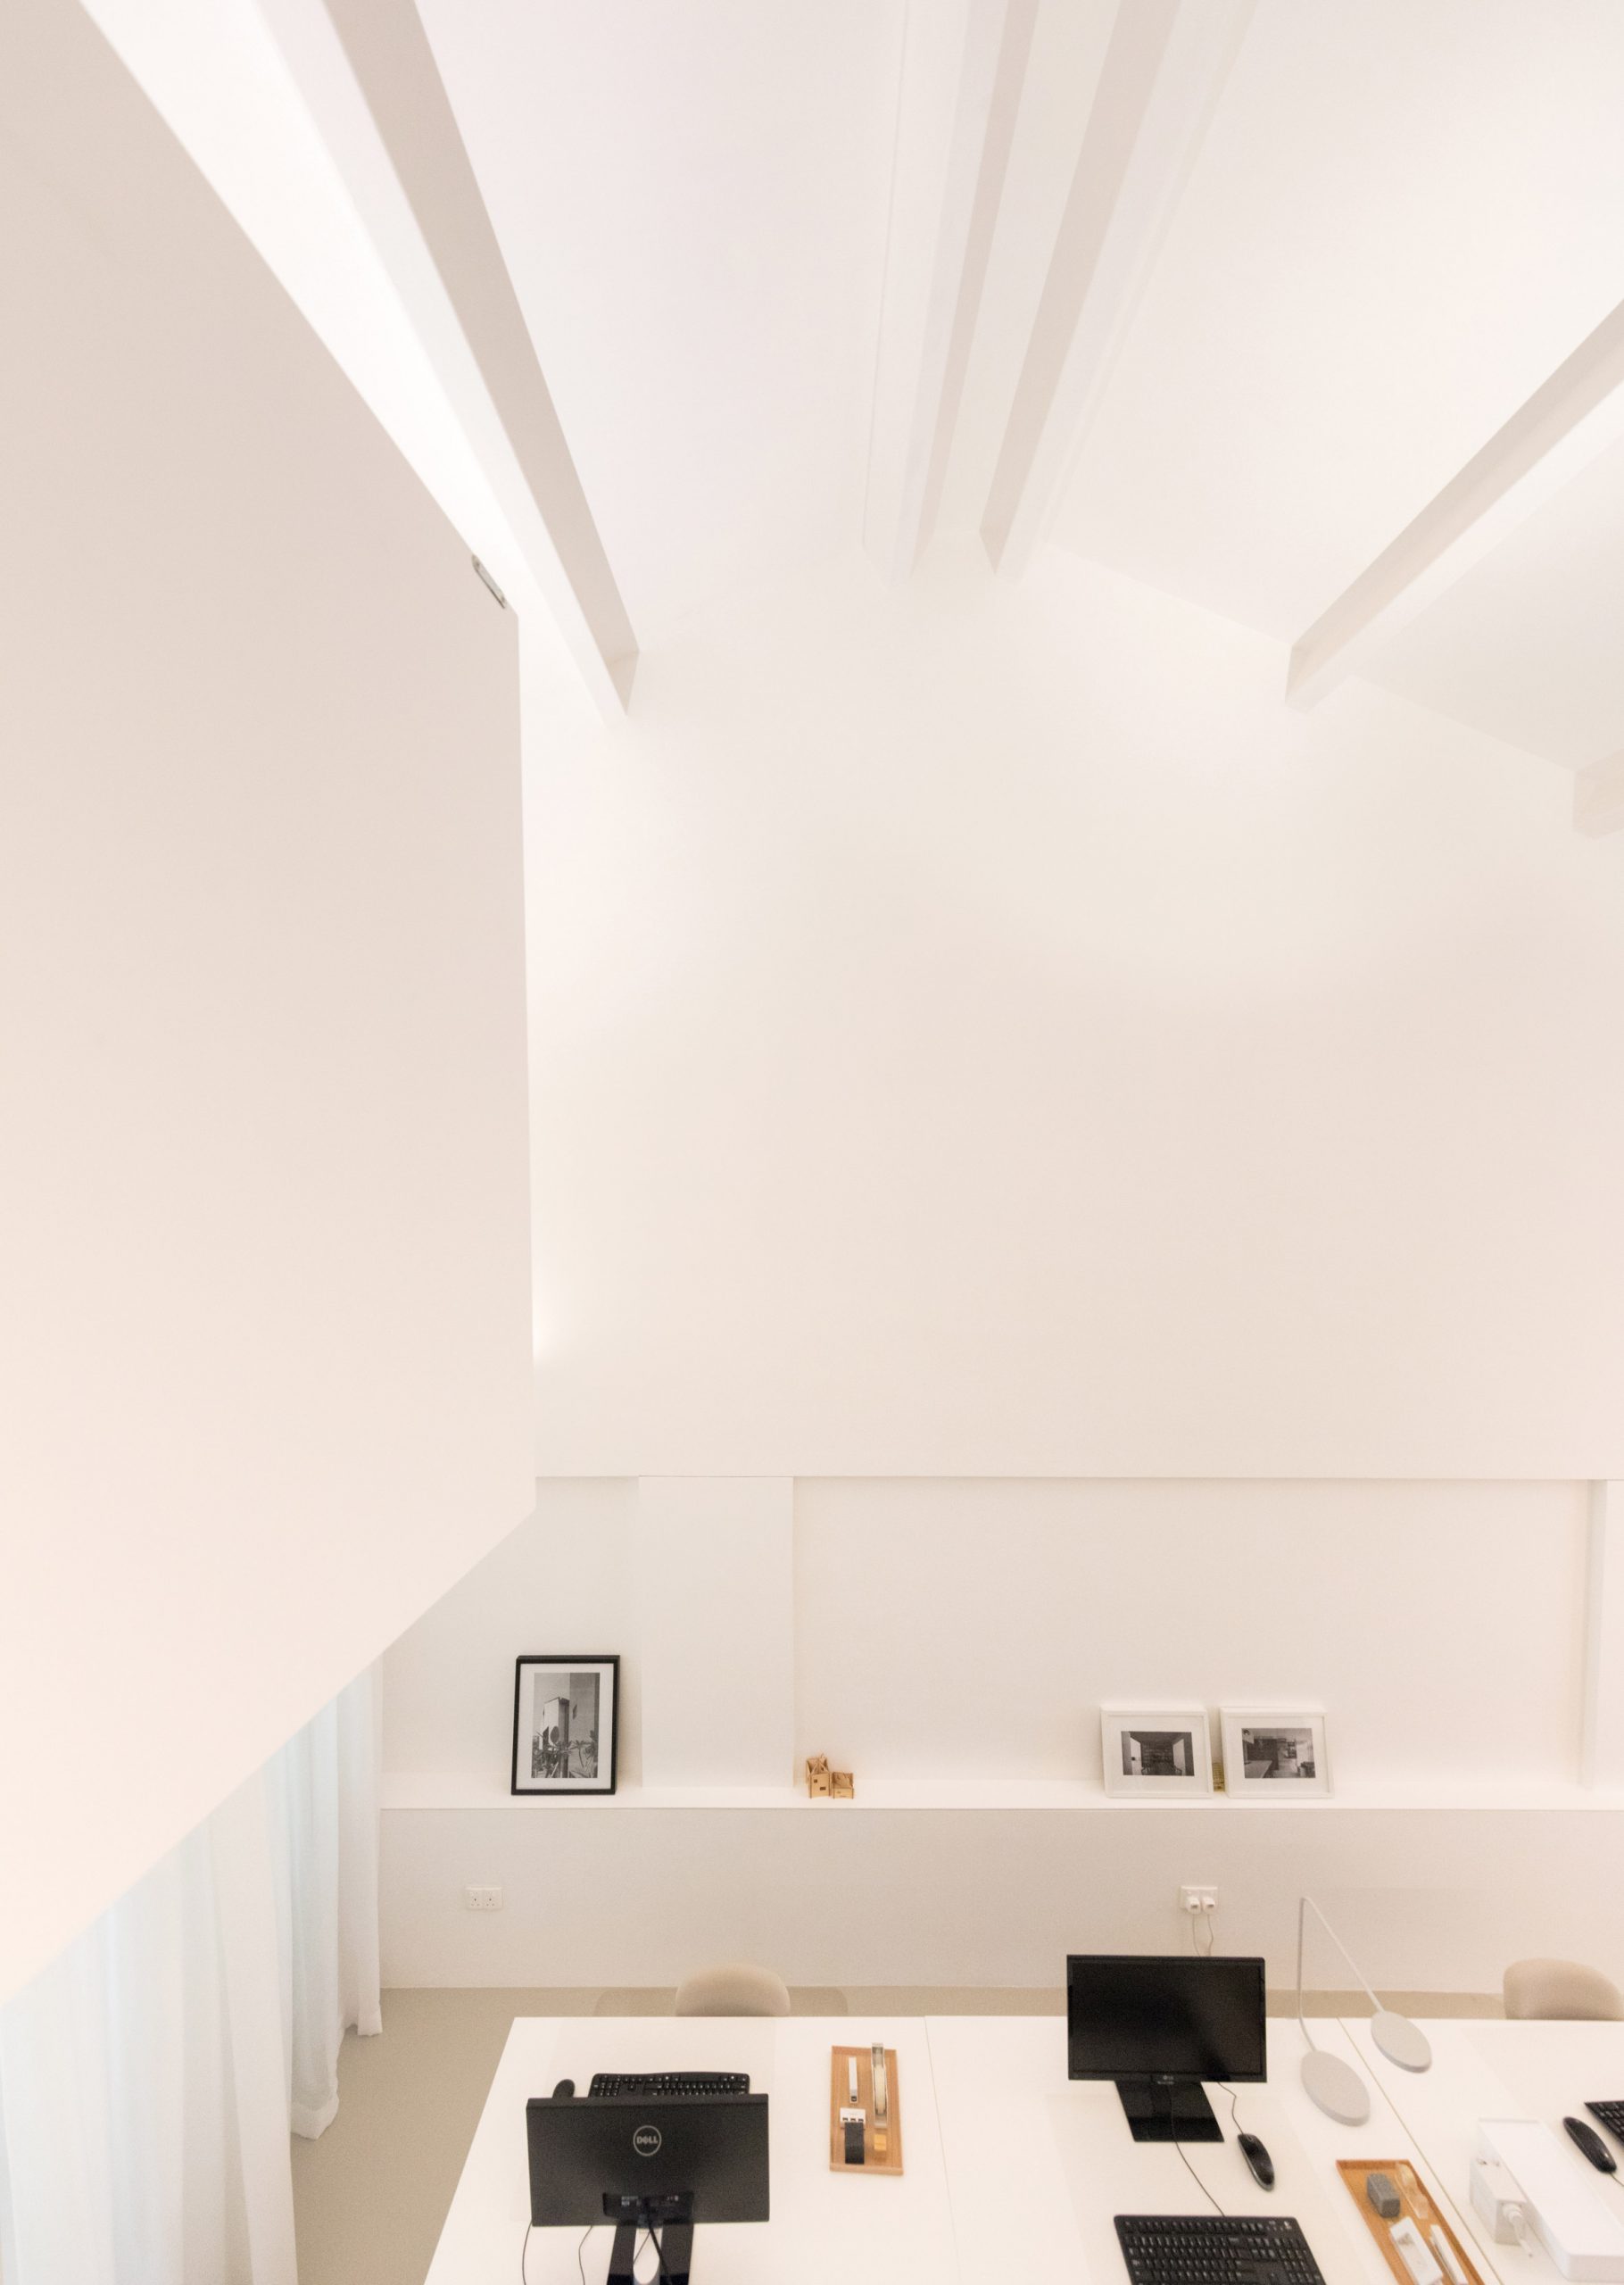 Căn hộ kết hợp văn phòng sử dụng gam màu trắng chủ đạo cho cái nhìn sáng sủa, tươi mới mỗi ngày. Các hốc tường cũng được tận dụng để trang trí phụ kiện xinh xinh.